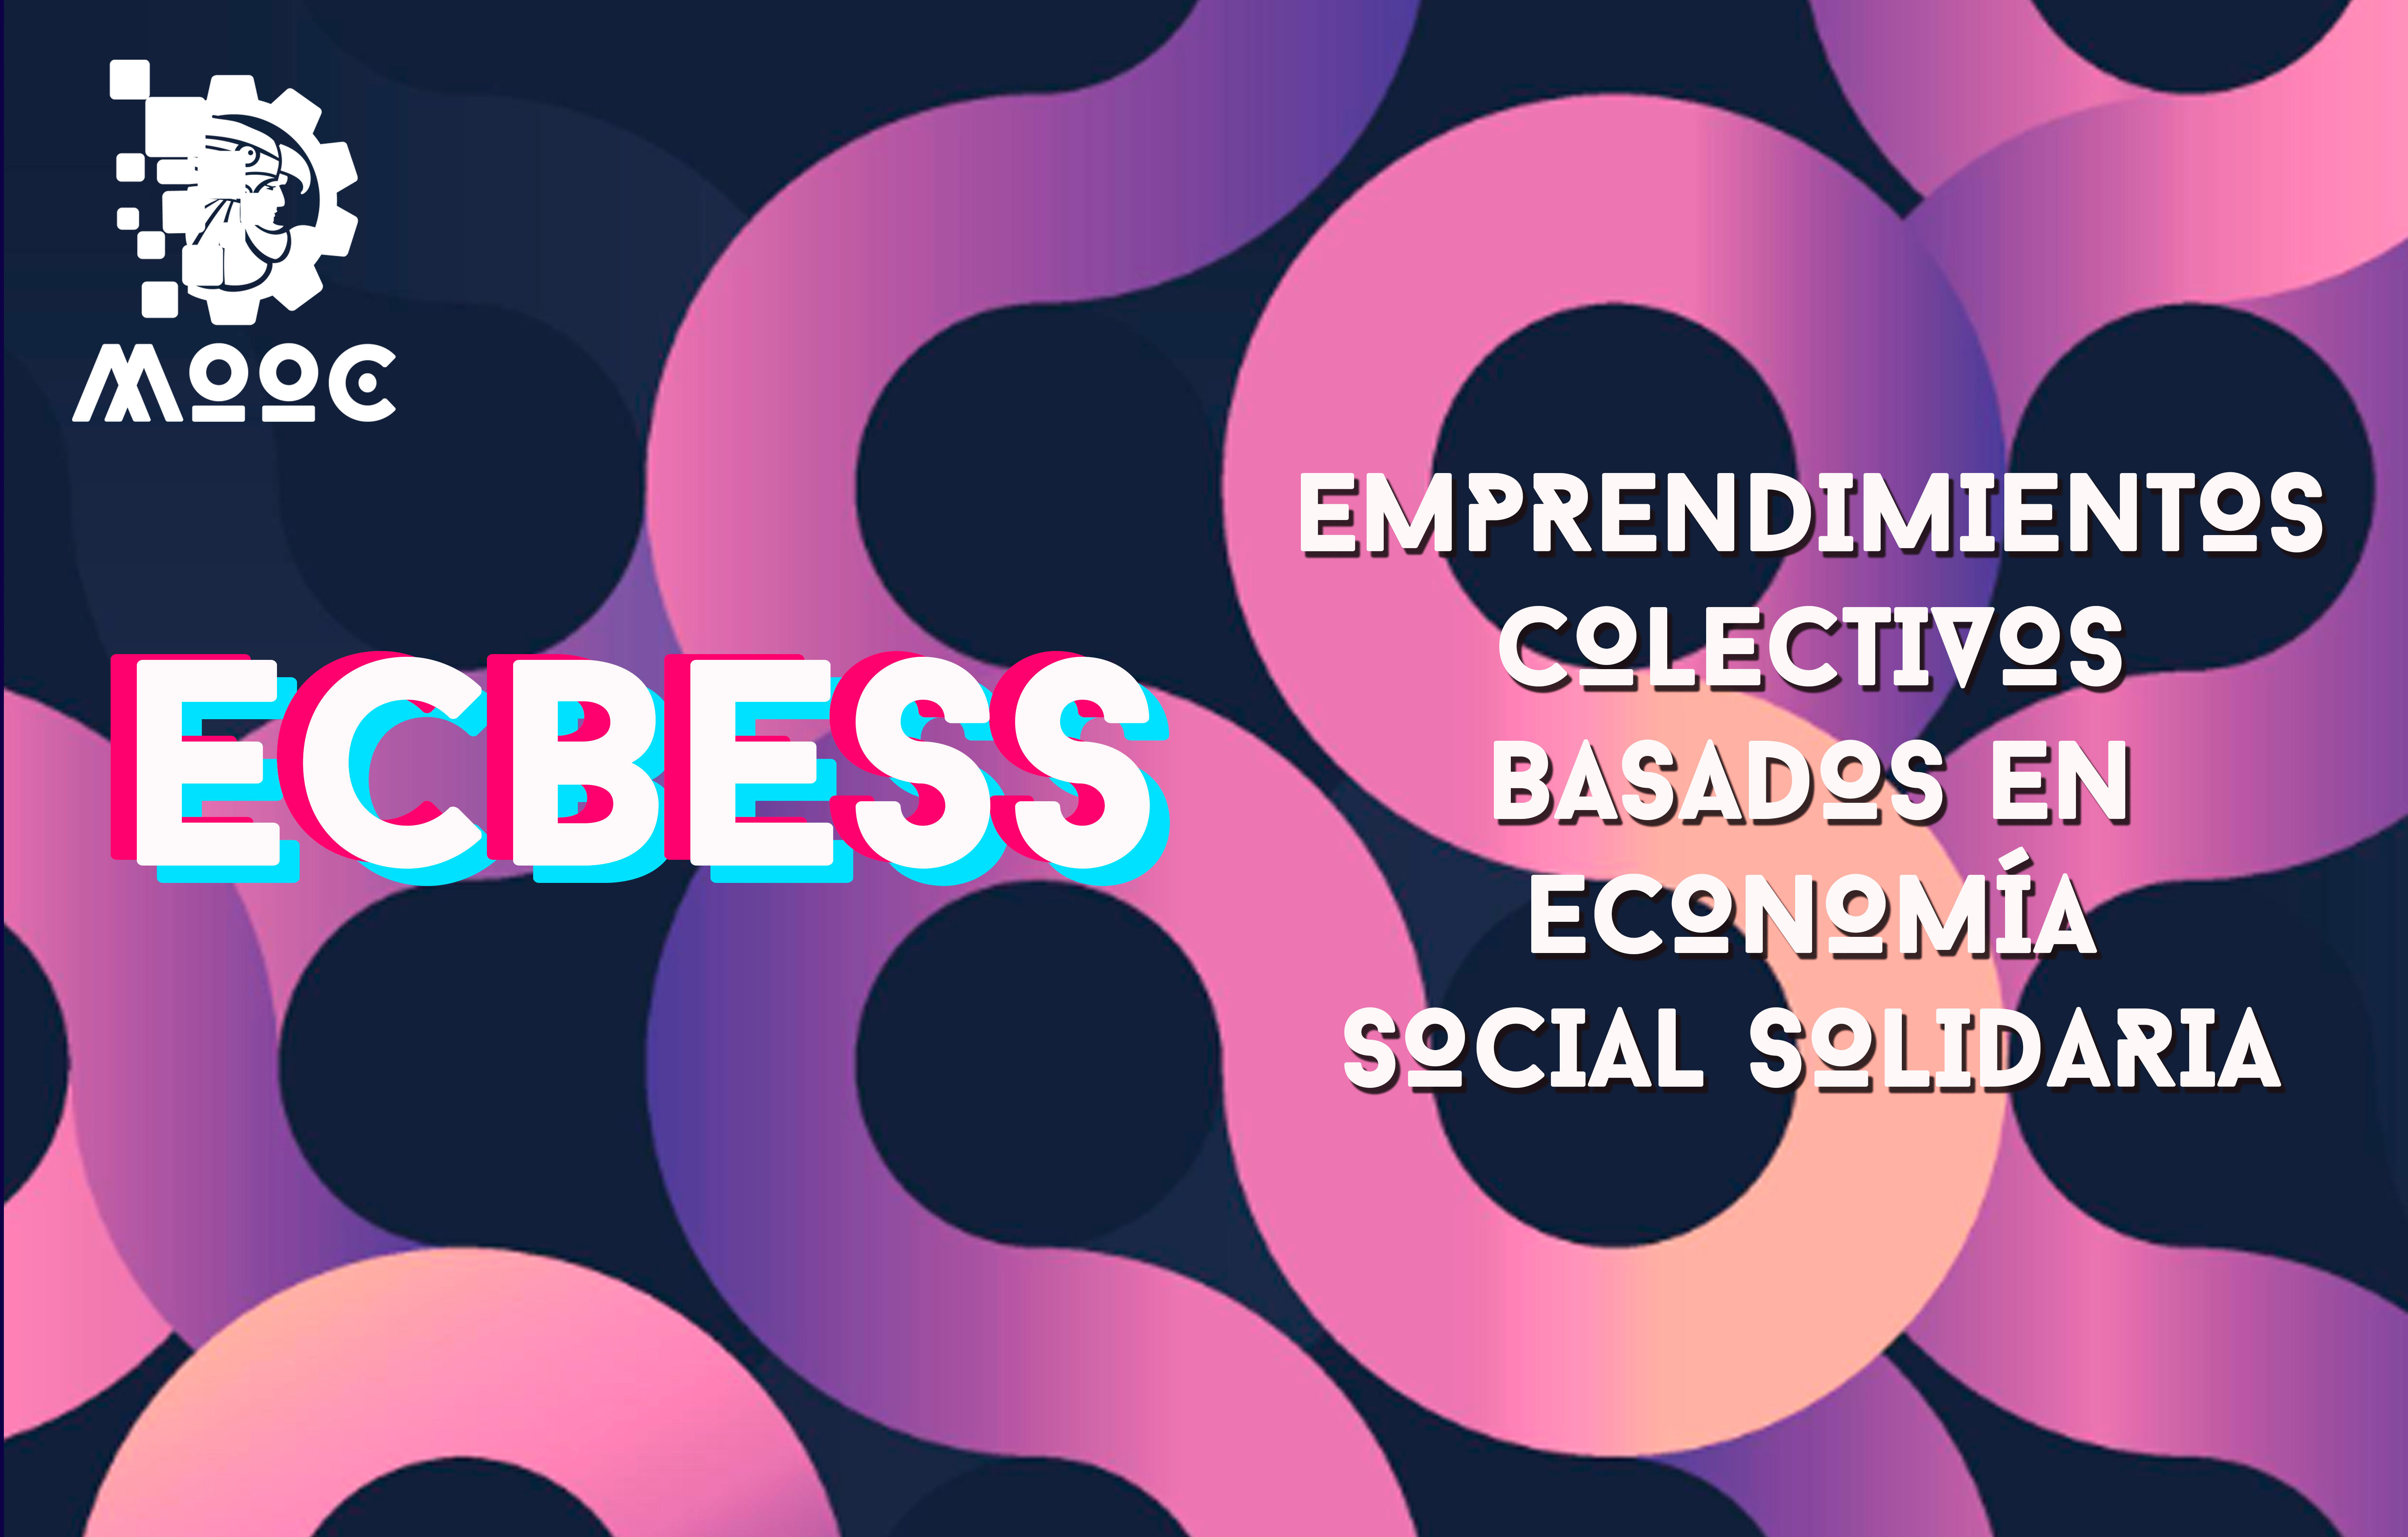 Emprendimientos colectivos basados en economia social solidaria ECBESS01-001